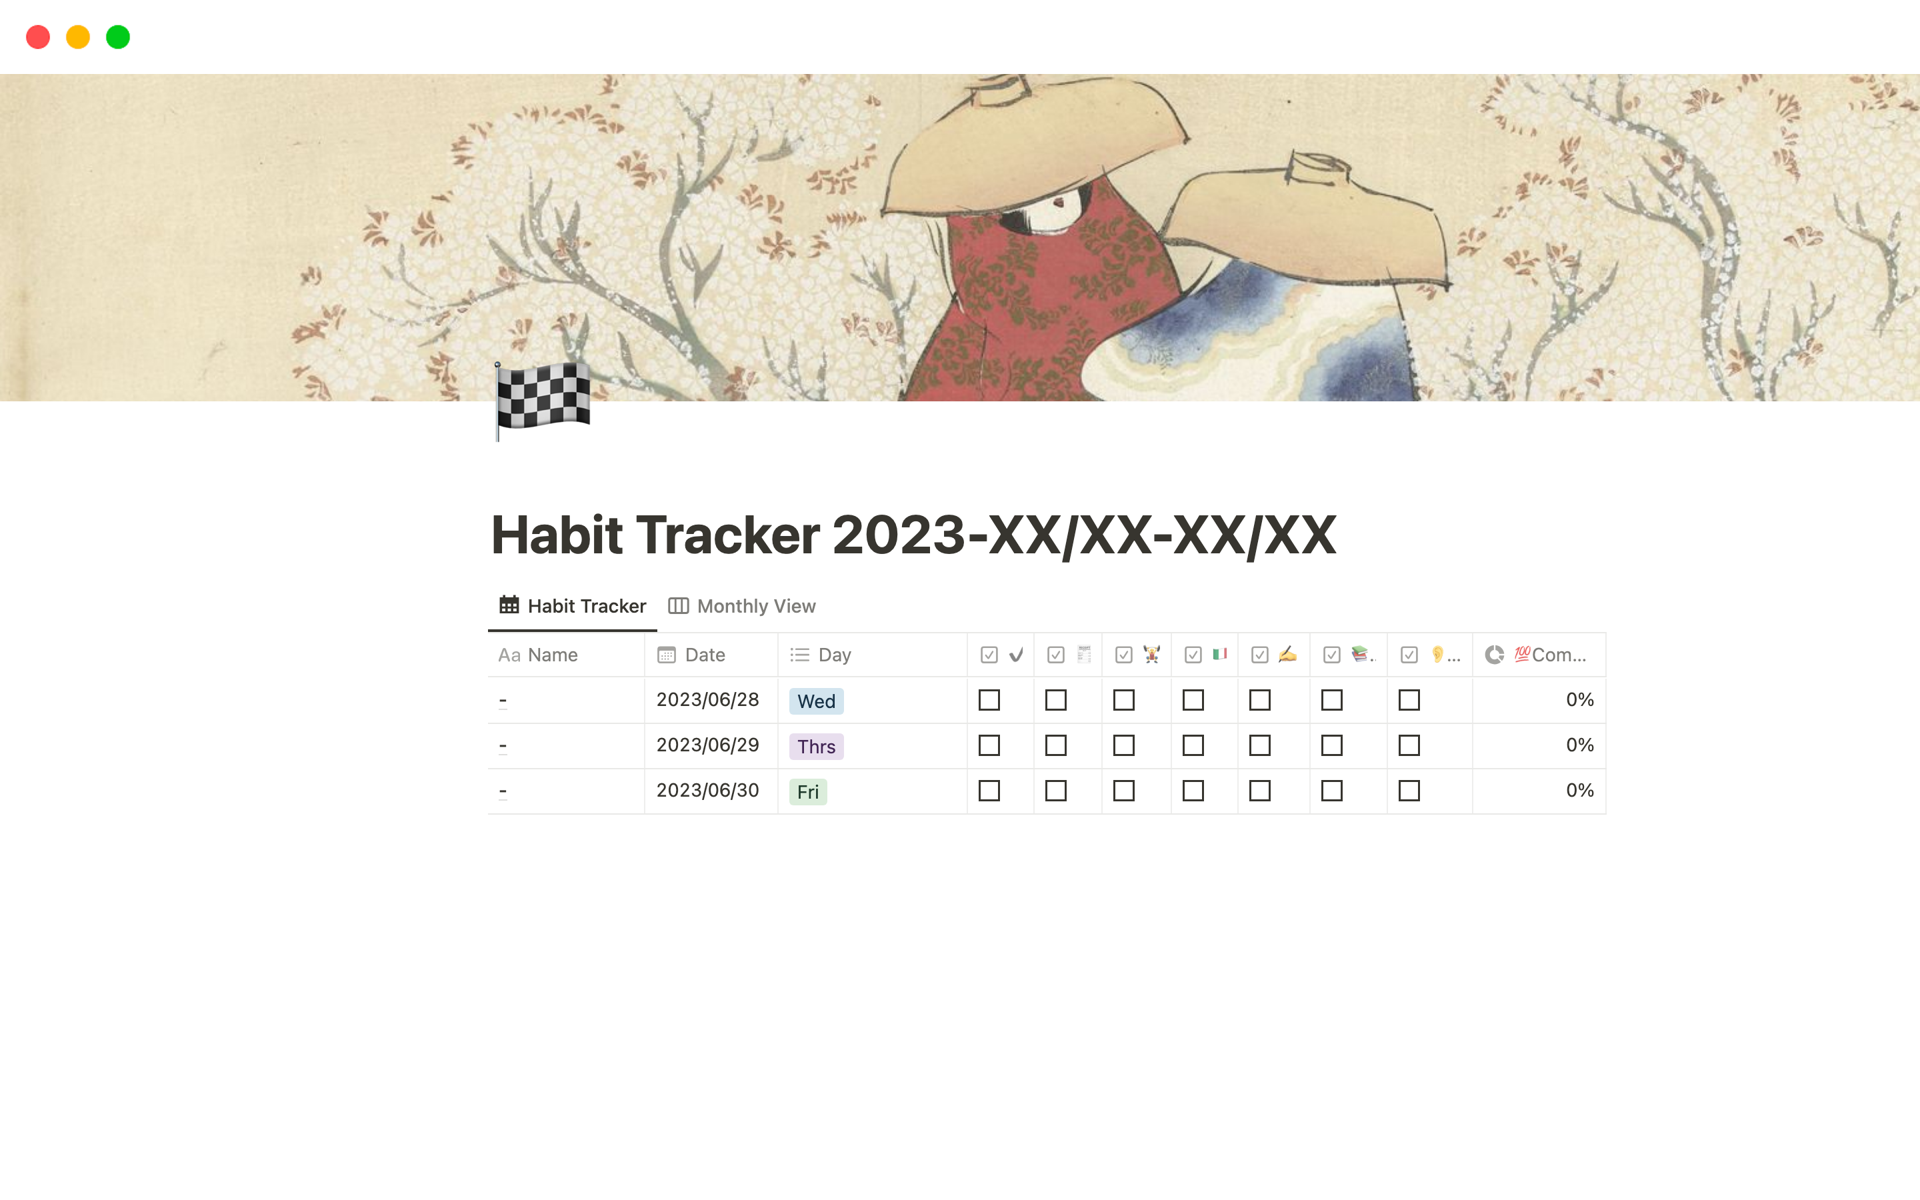 Vista previa de plantilla para Habit Tracker : 20XX-XX/XX-XX/XX